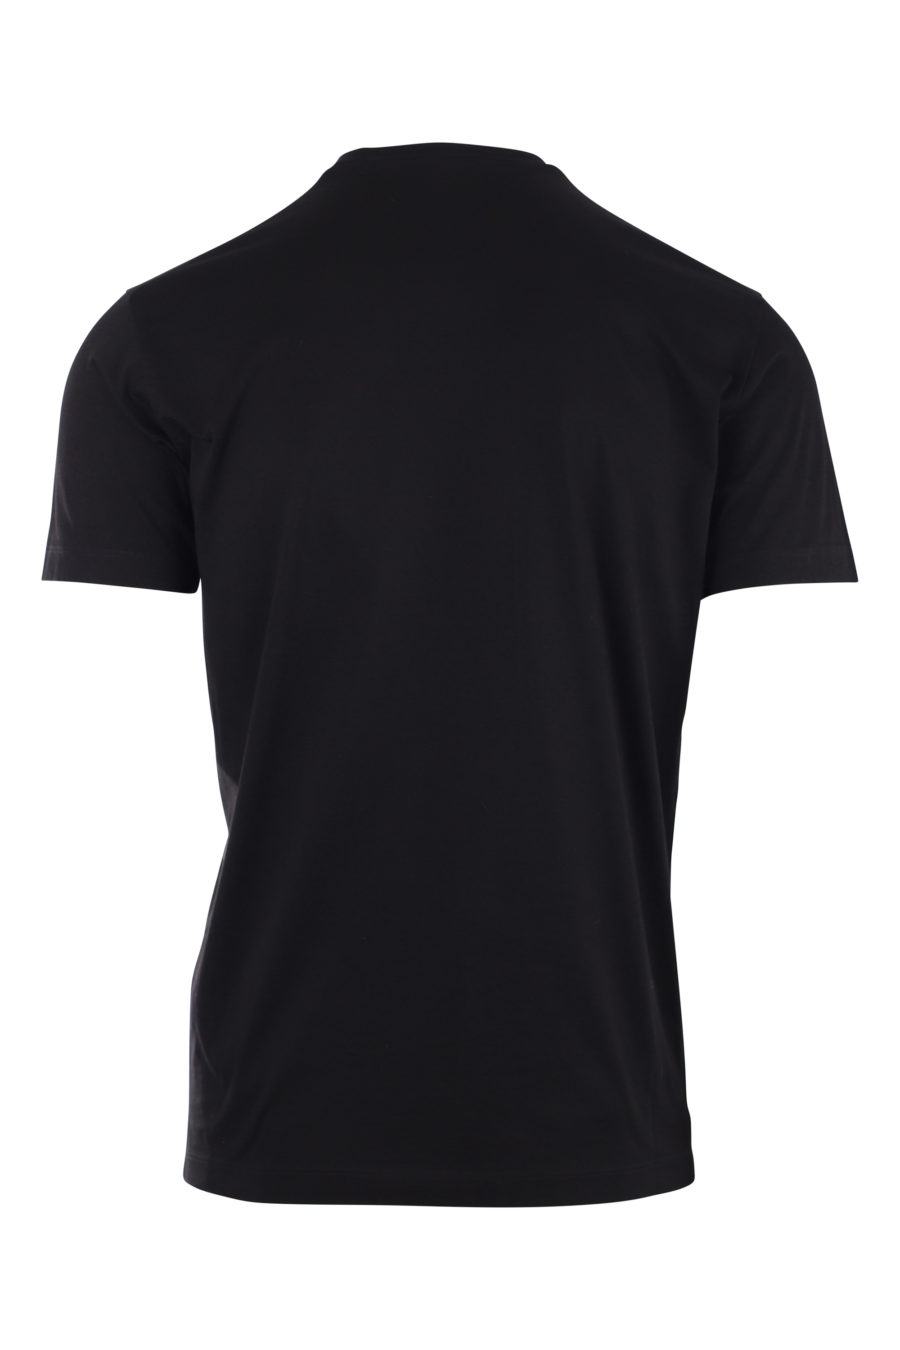 Camiseta negra con logo "icon splash" - IMG 9716